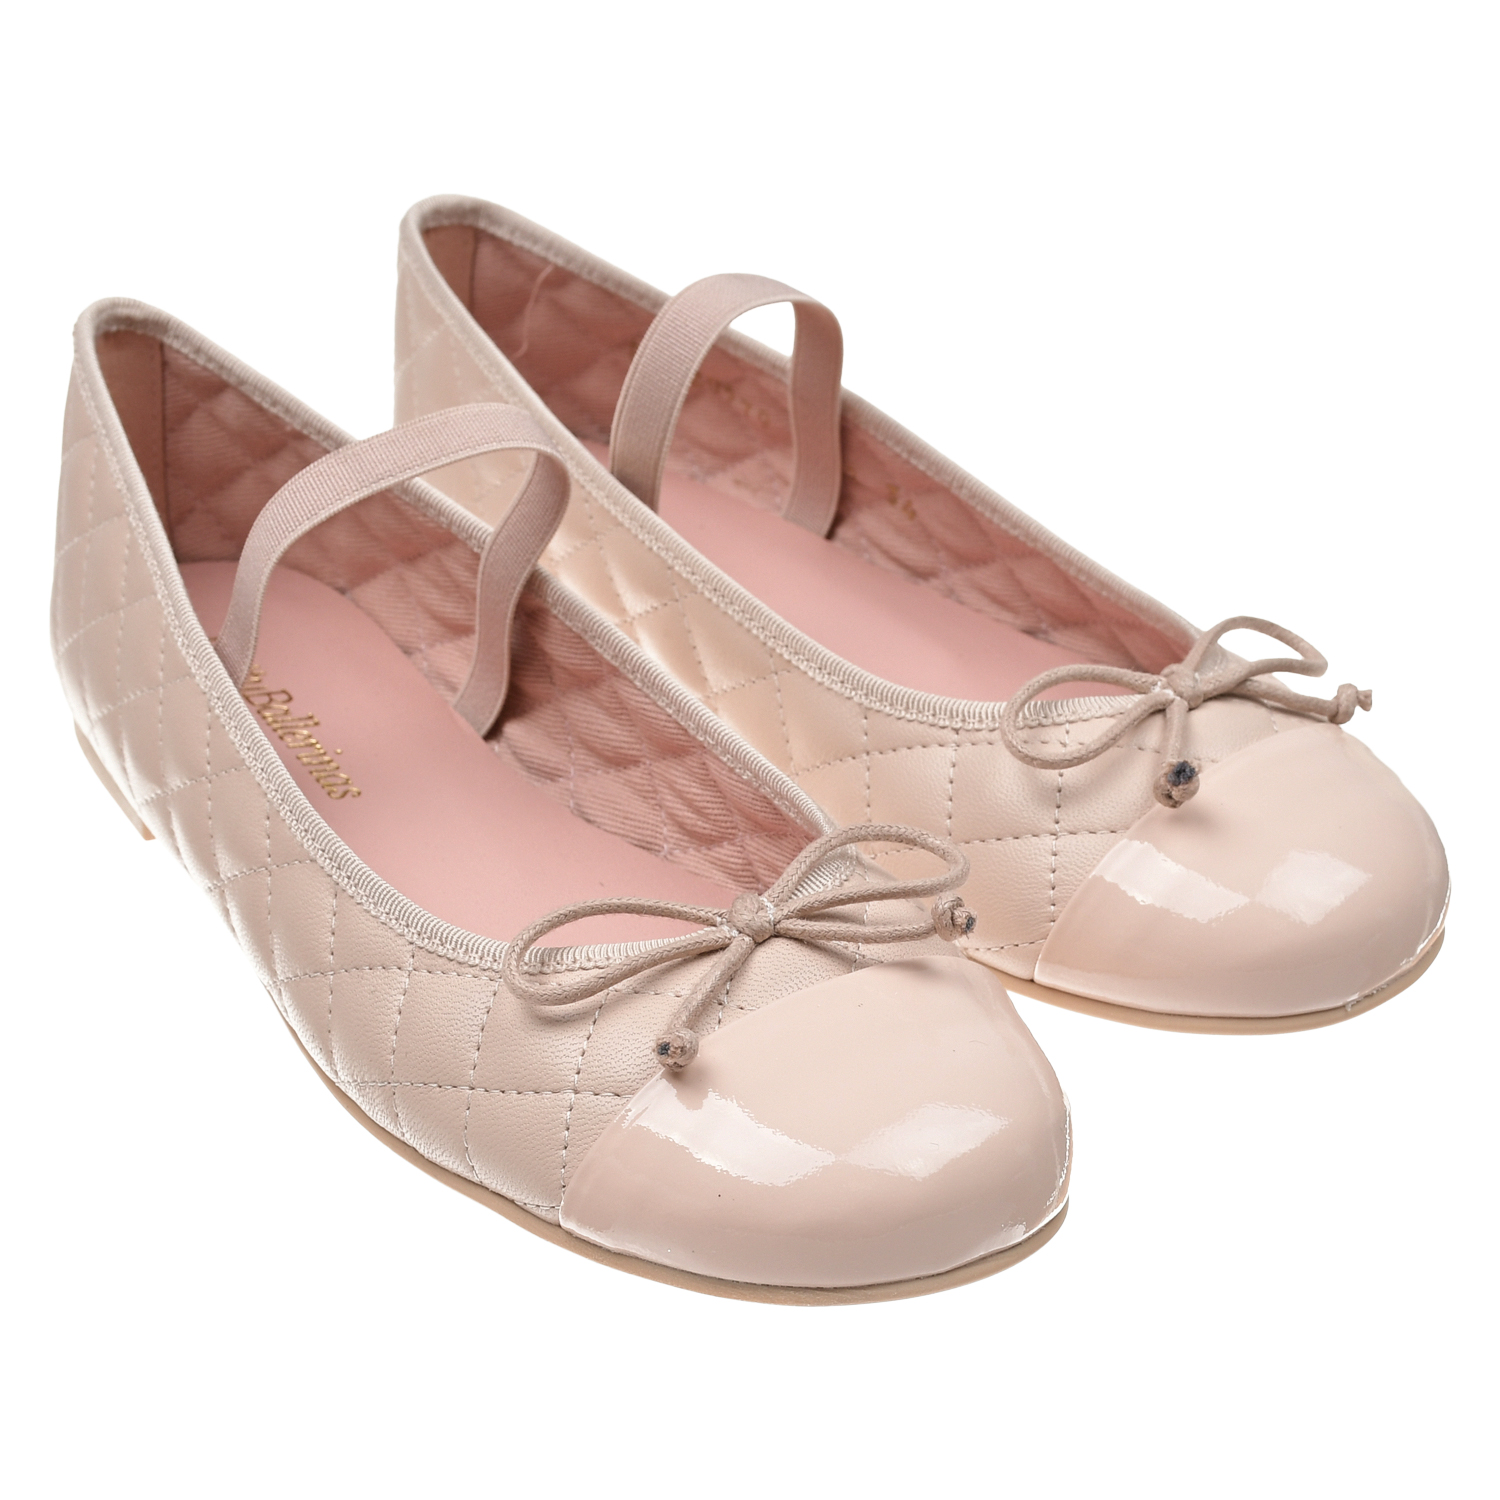 Пудровые туфли со стеганой отделкой Pretty Ballerinas скатерть 120 х 150 см towa ажурная pretty